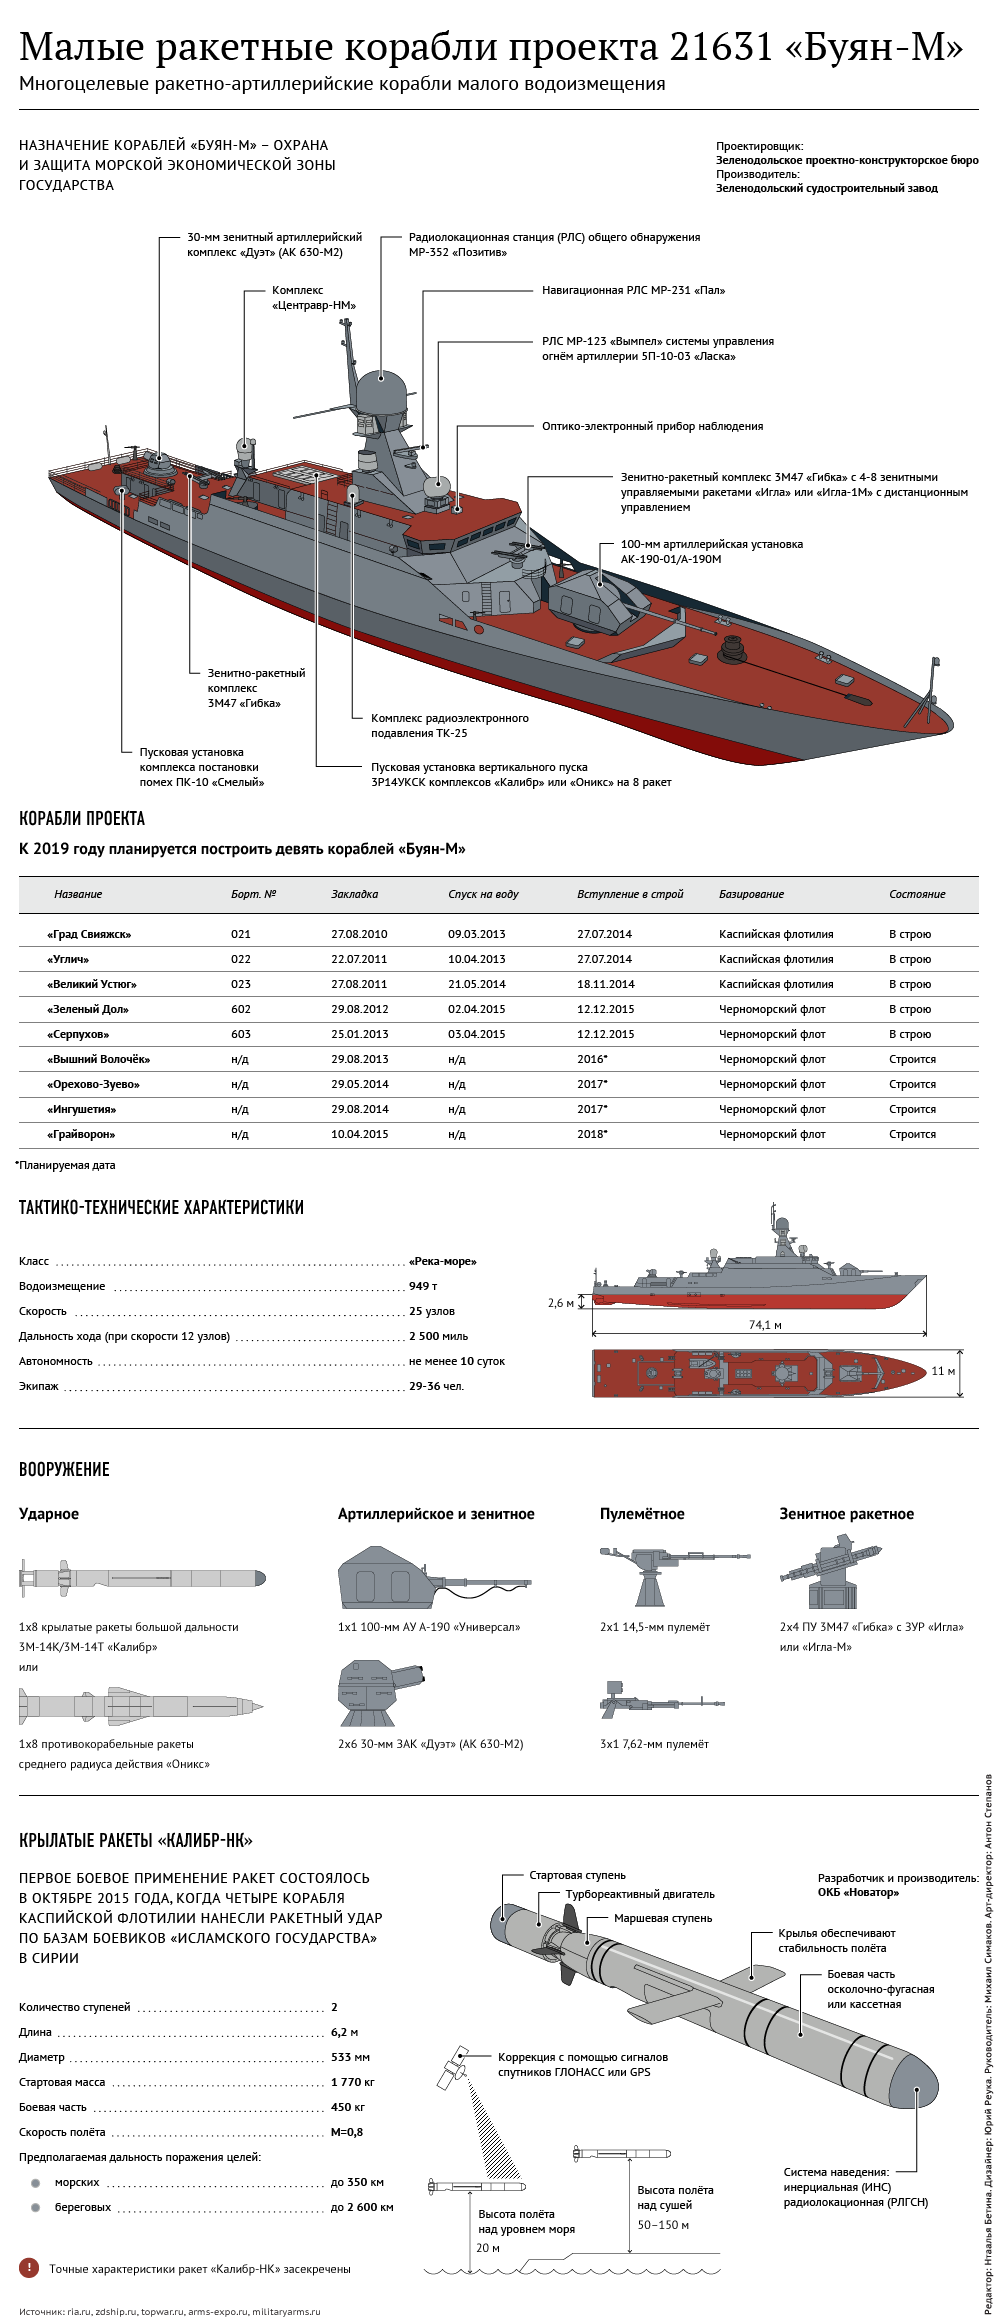 ✅ малые ракетные корабли проекта 21631 «буян-м» (россия) - legguns.ru